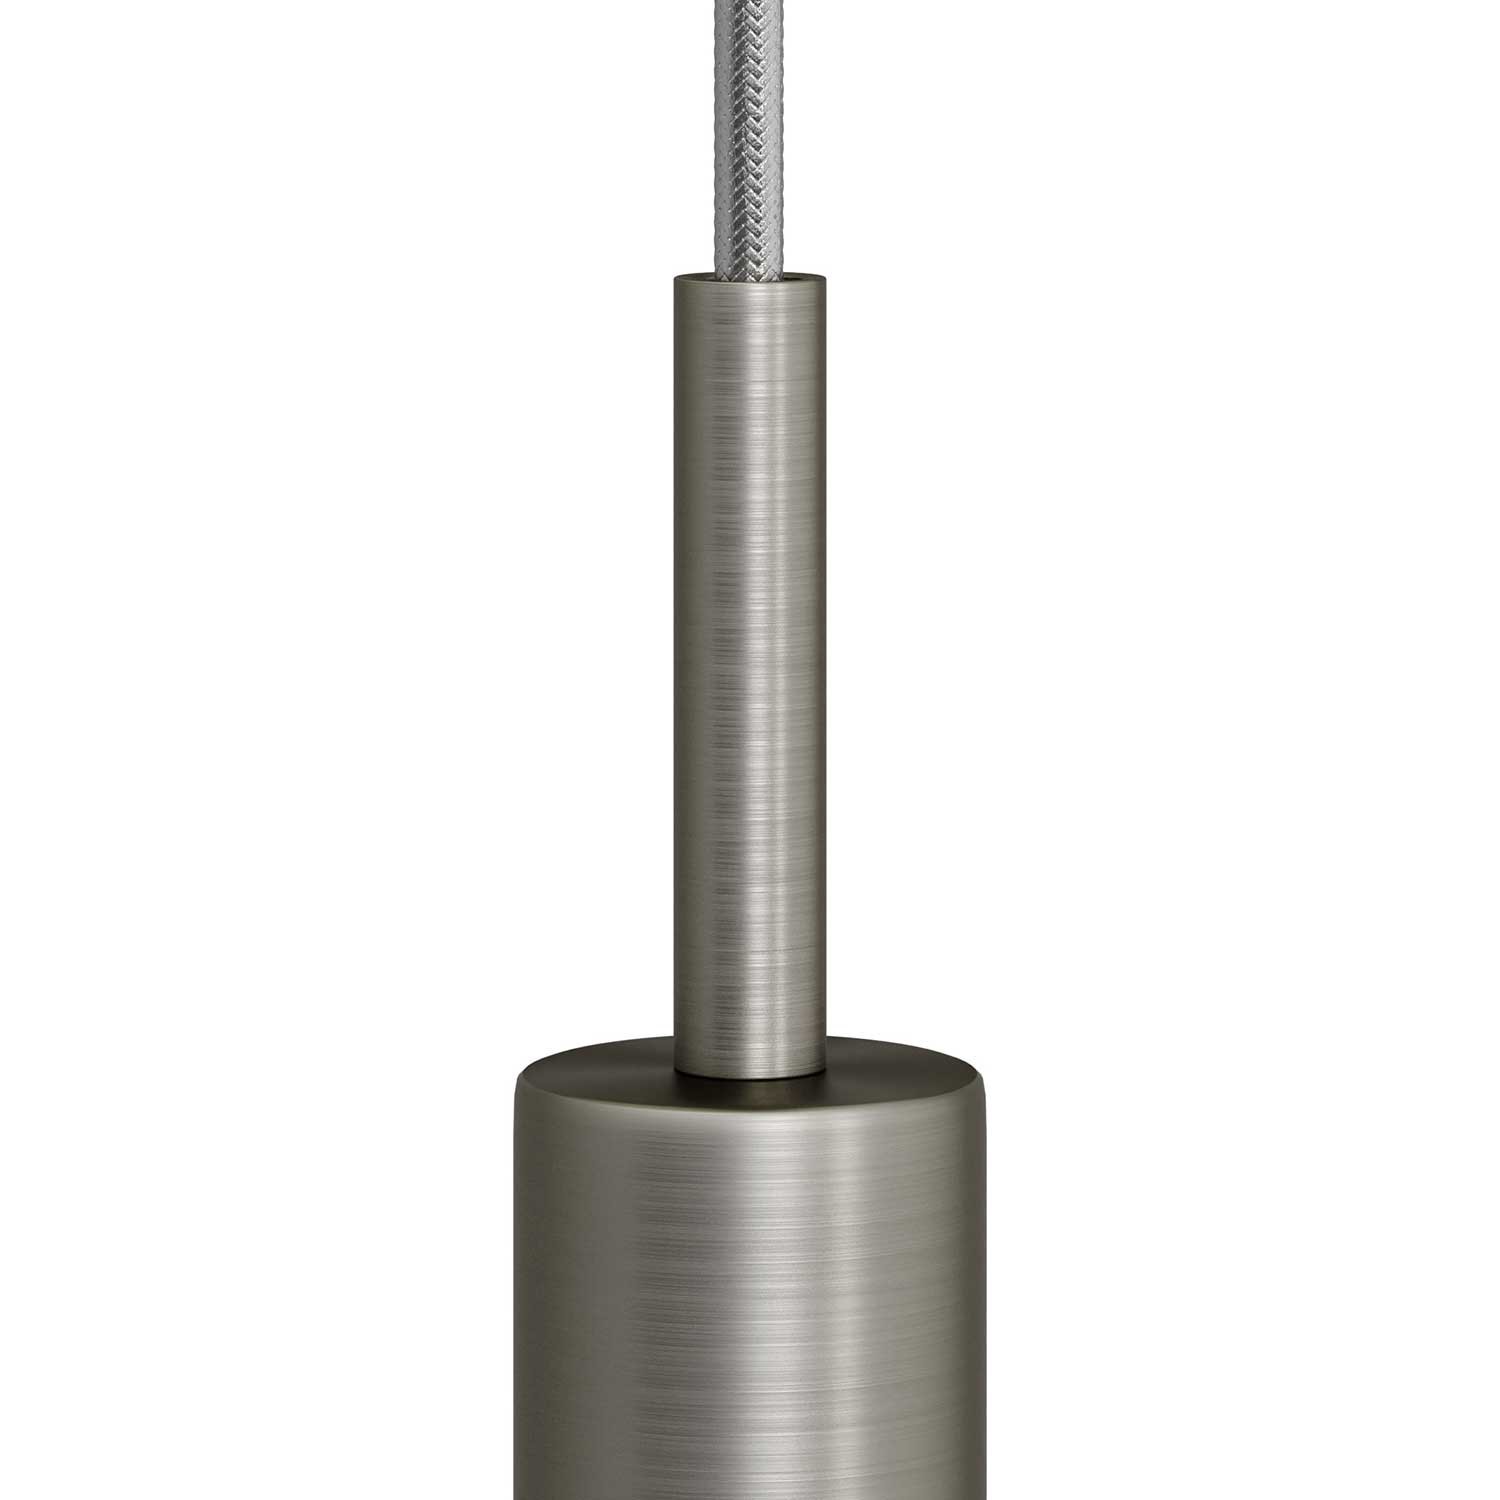 Cylindrisk dragavlastare i metall 7 cm lång komplett med gängstång, mutter samt låsbricka